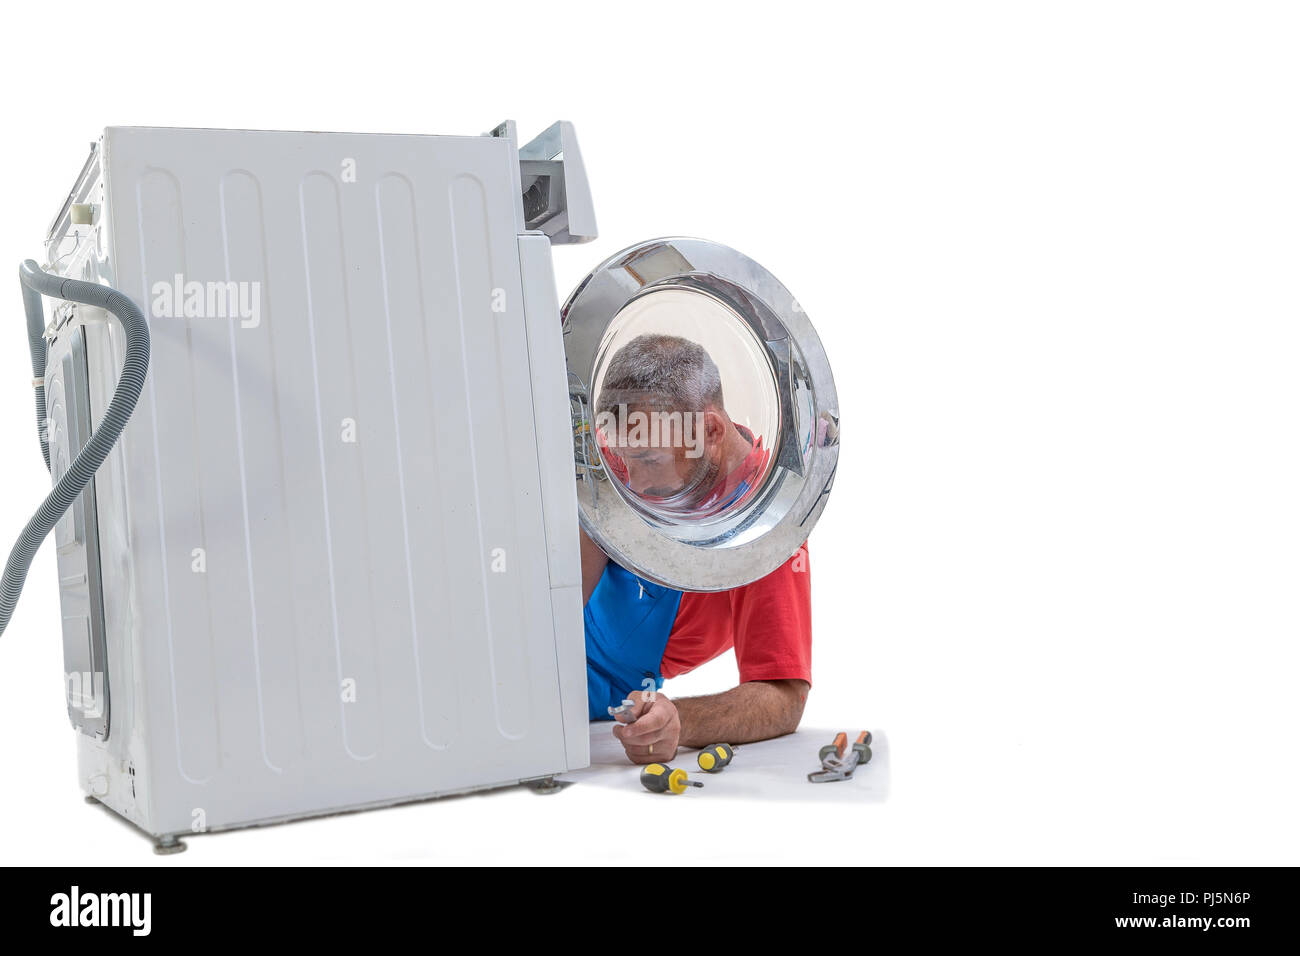 Plumber repairing washing machine on white environment Stock Photo